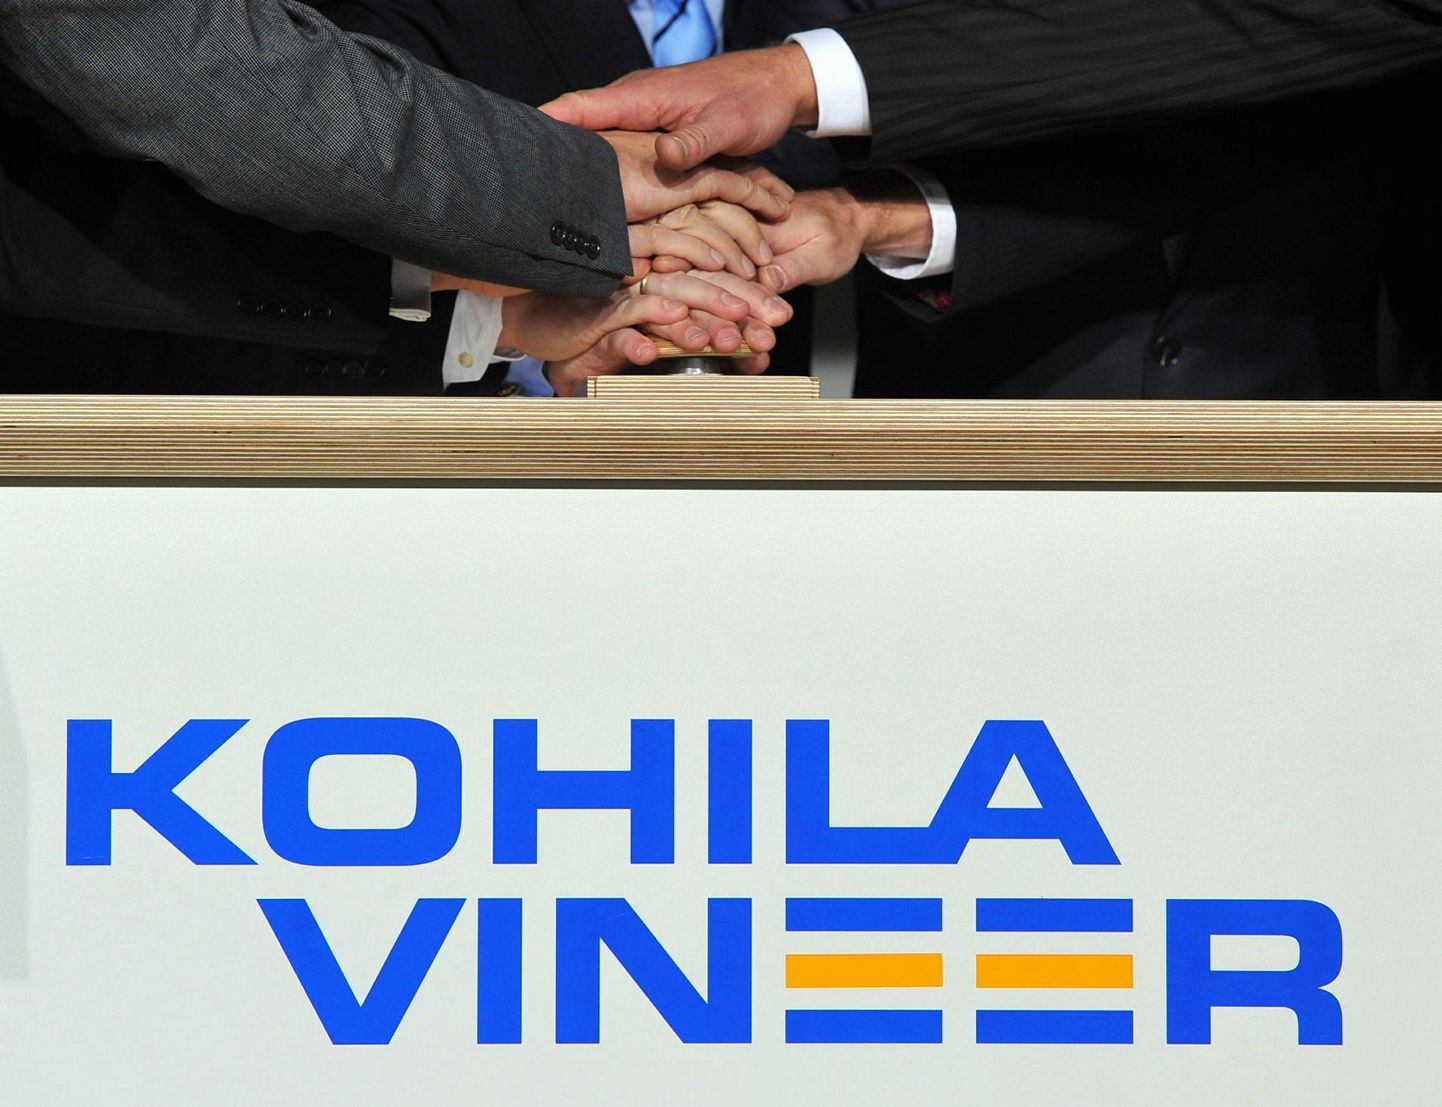 Kohilas avati uus vineer tehas Kohila Vineer.